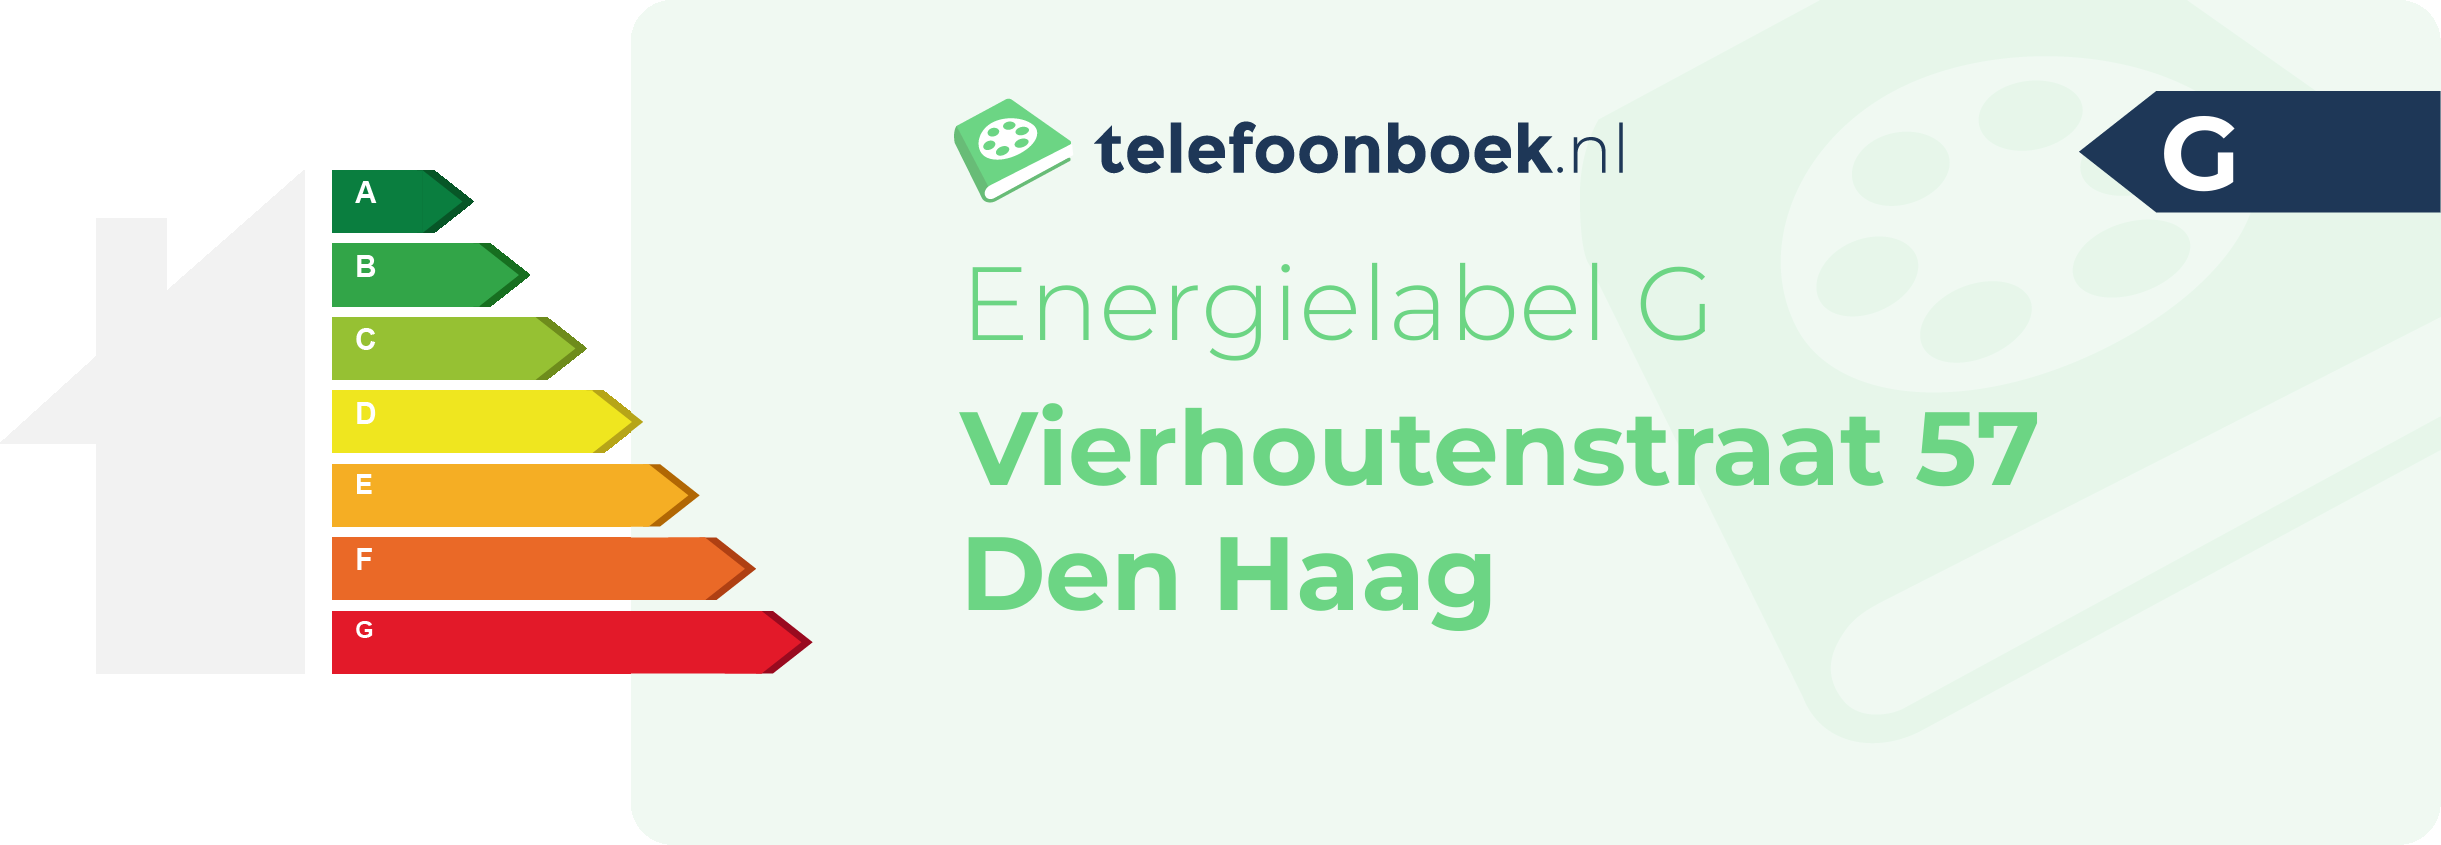 Energielabel Vierhoutenstraat 57 Den Haag